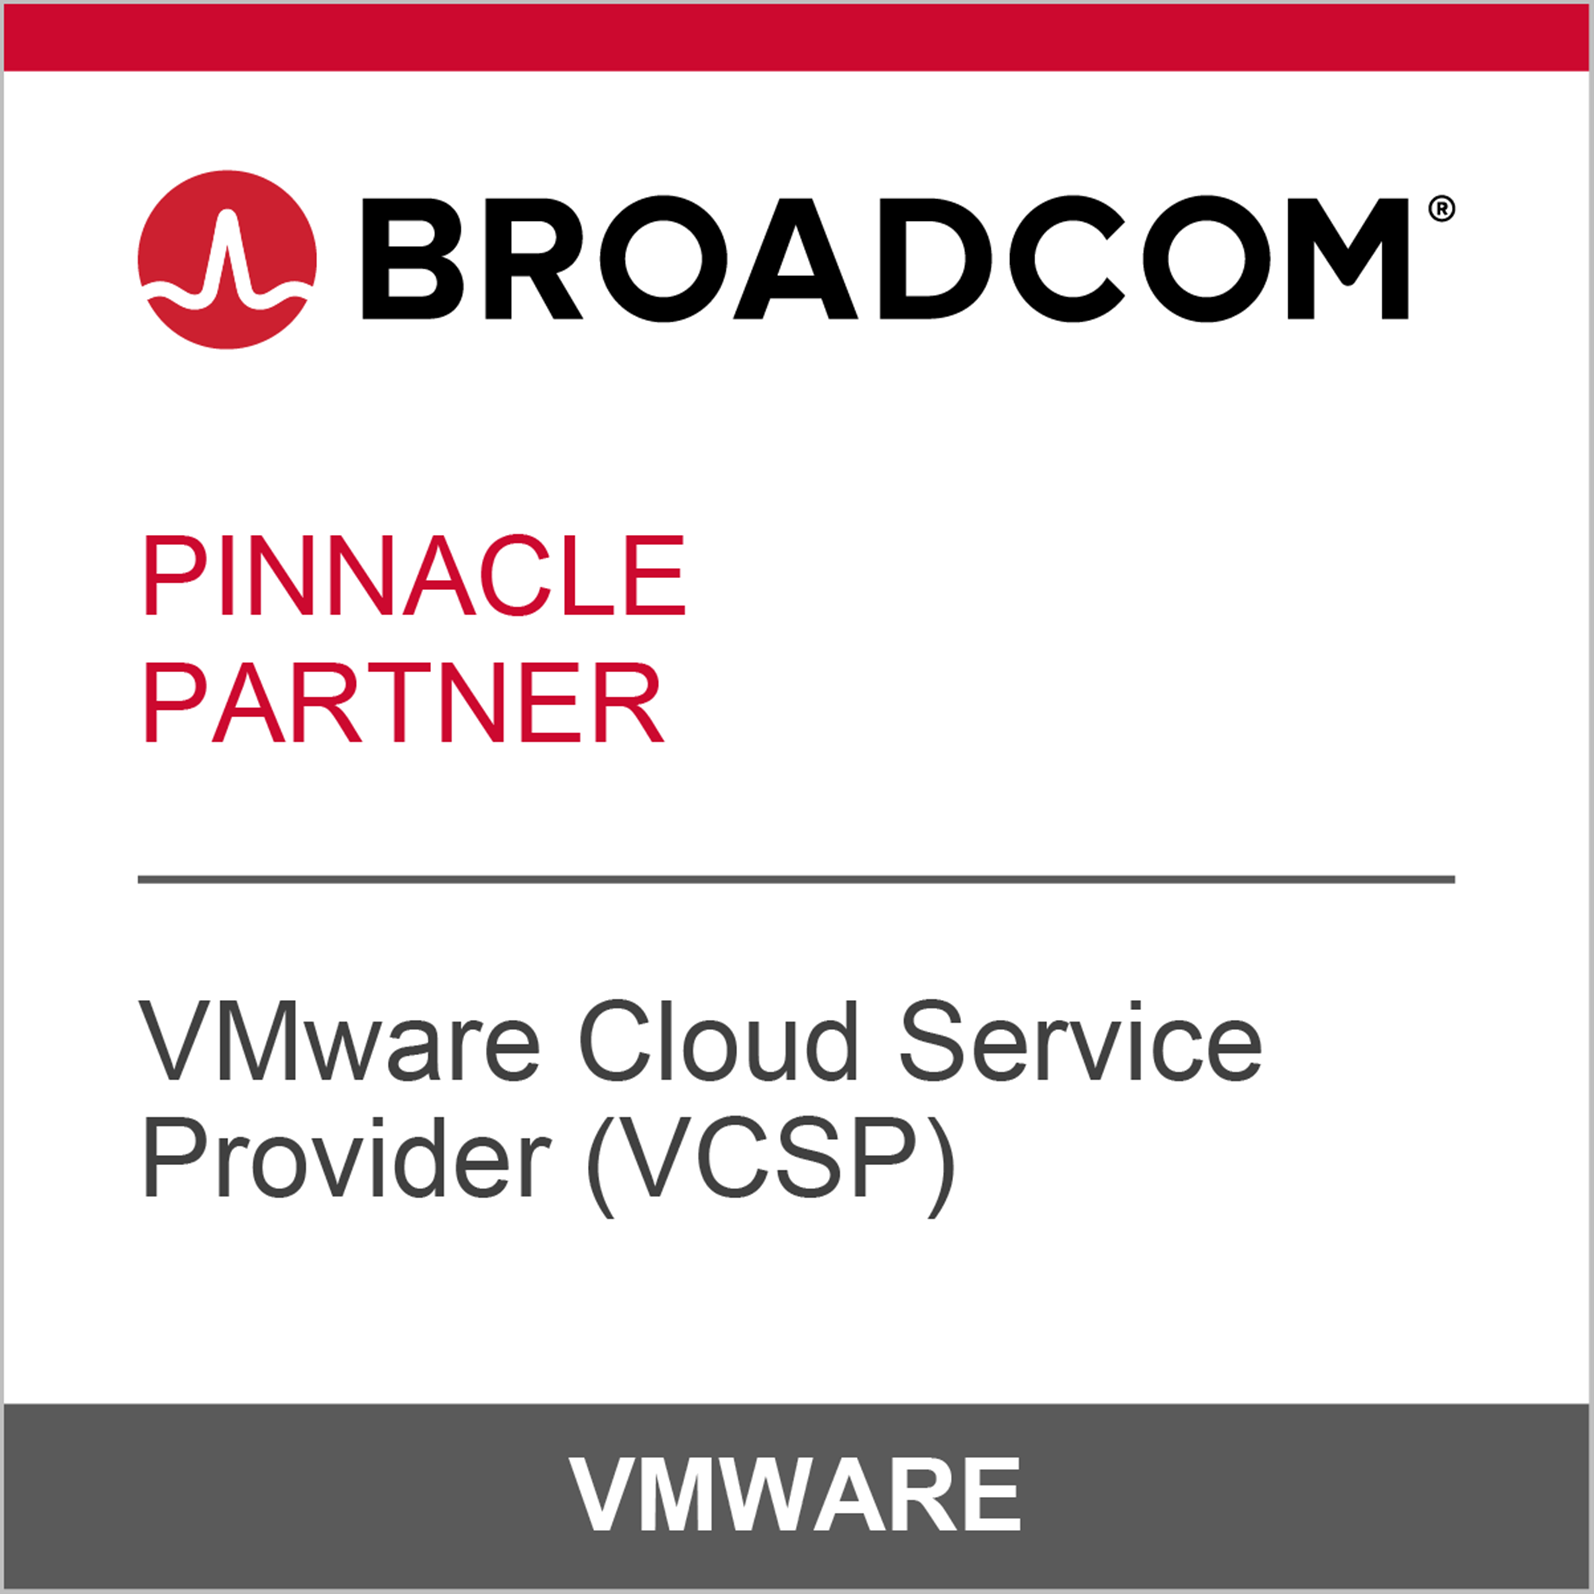 中信国际电讯CPC成为博通 (Broadcom) 战略合作伙伴荣登VMware 云服务供应商 (VCSP) - Pinnacle更高合作级别位置